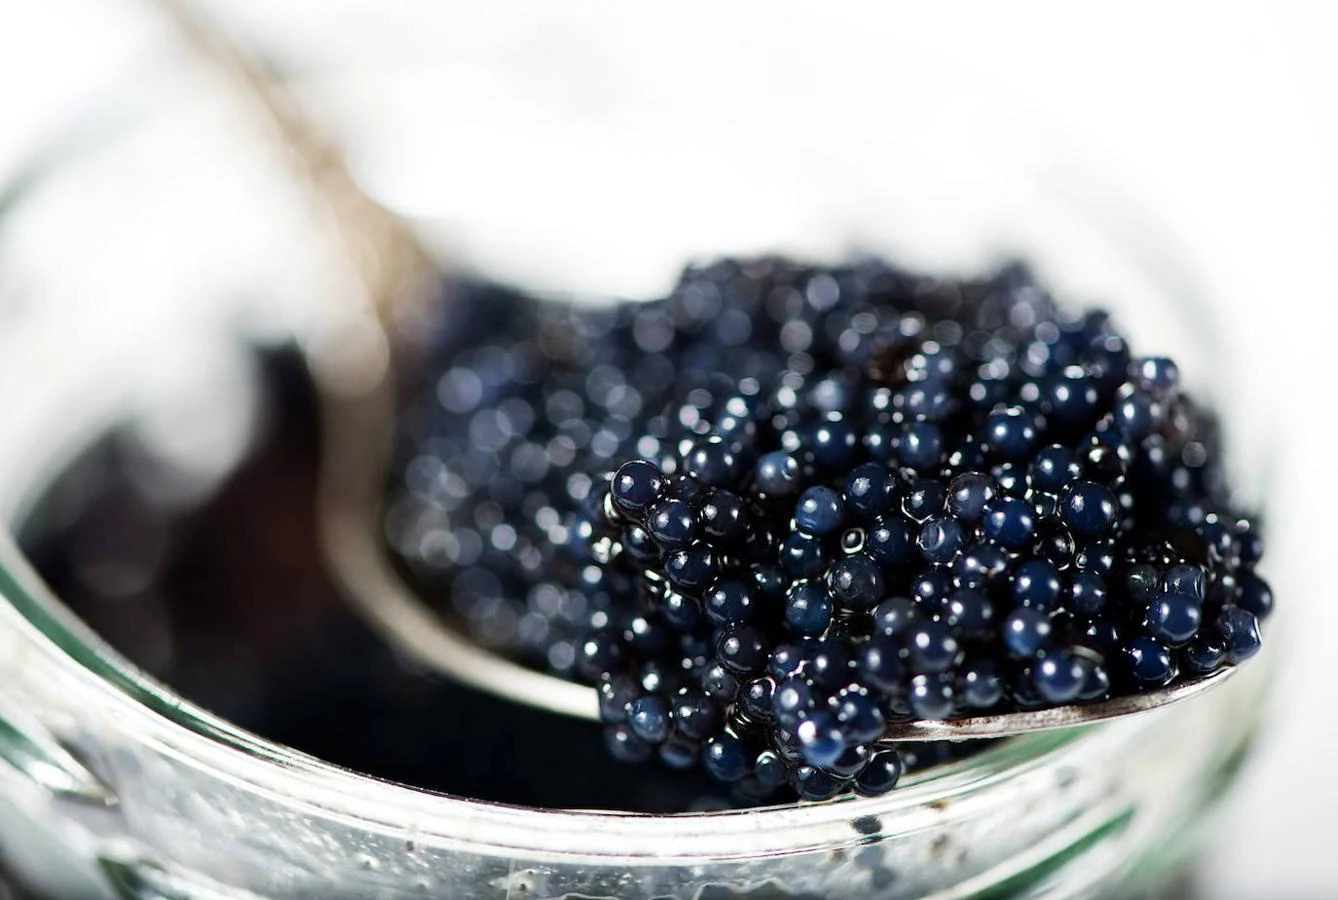 Caviar. El caviar no es solo uno de los alimentos con mayor cantidad de vitamina D, sino que también cuenta con un gran aporte de hierro: 11.88 miligramos por cada 100 gramos según datos de la Bedca. Esta delicatessen también es rica en calcio y potasio.